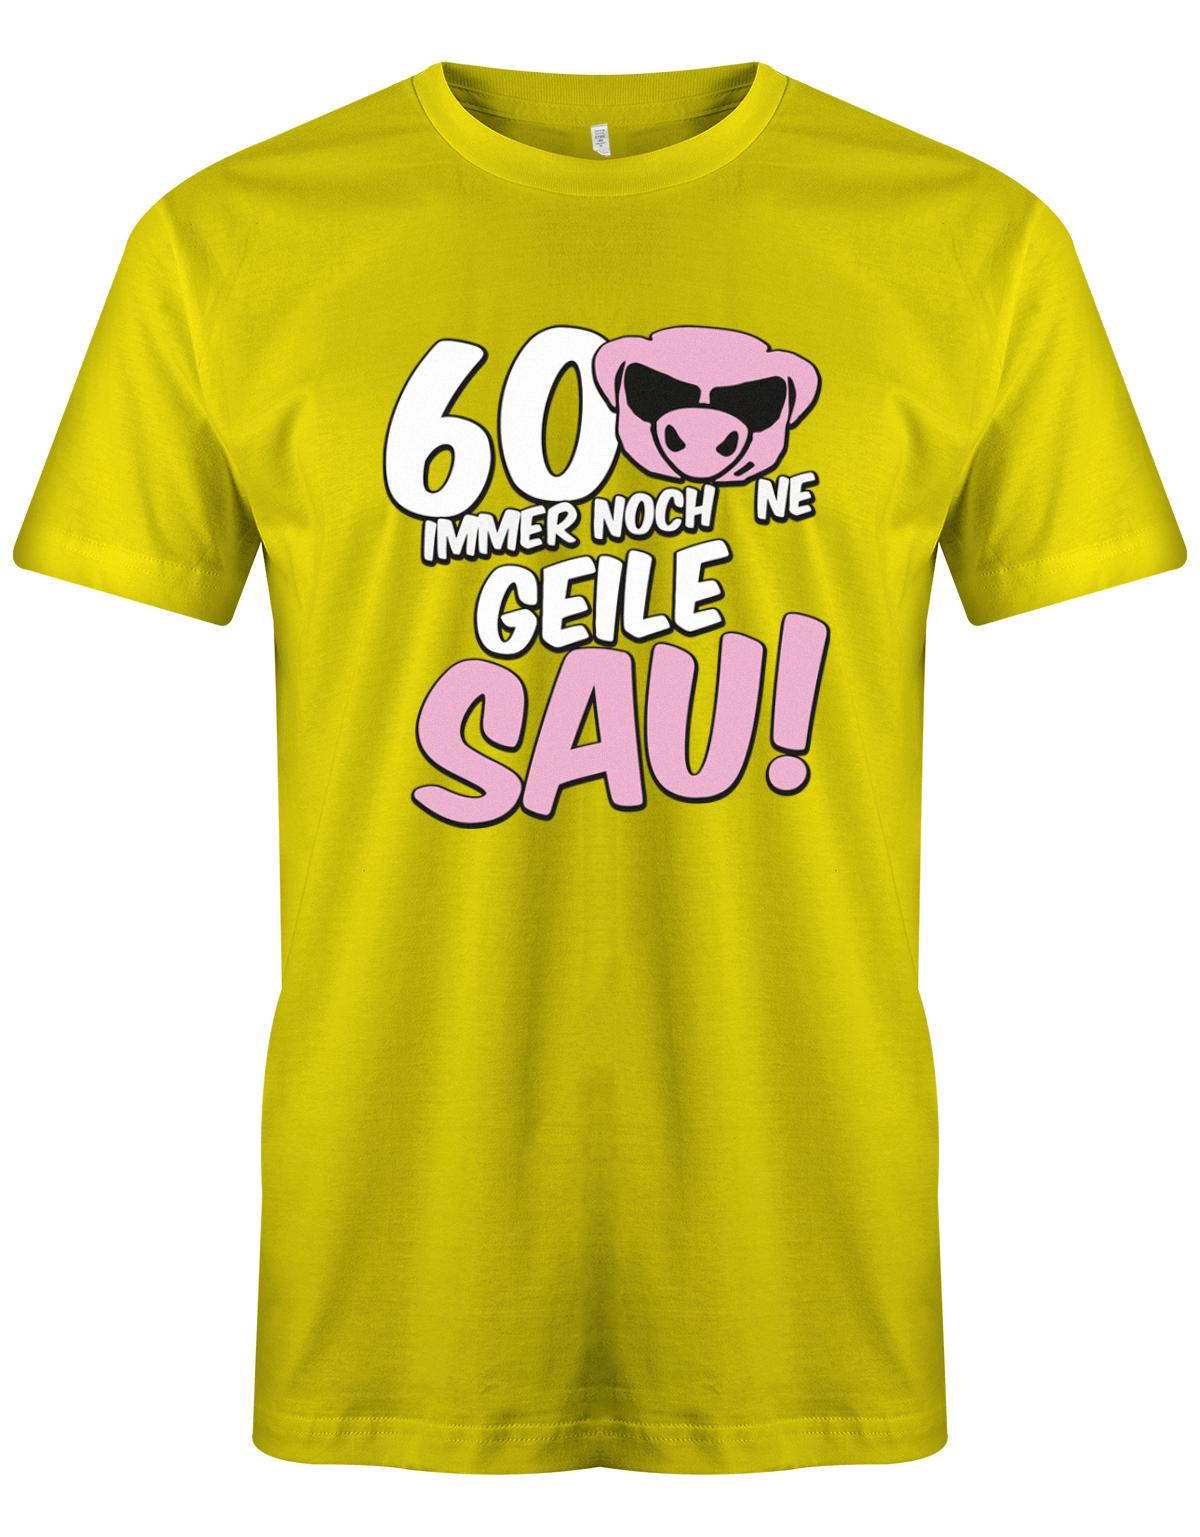 Lustiges T-Shirt zum 60 Geburtstag für den Mann Bedruckt mit 60 Immer noch 'ne geile Sau! Sau mit Sonnenbrille gelb